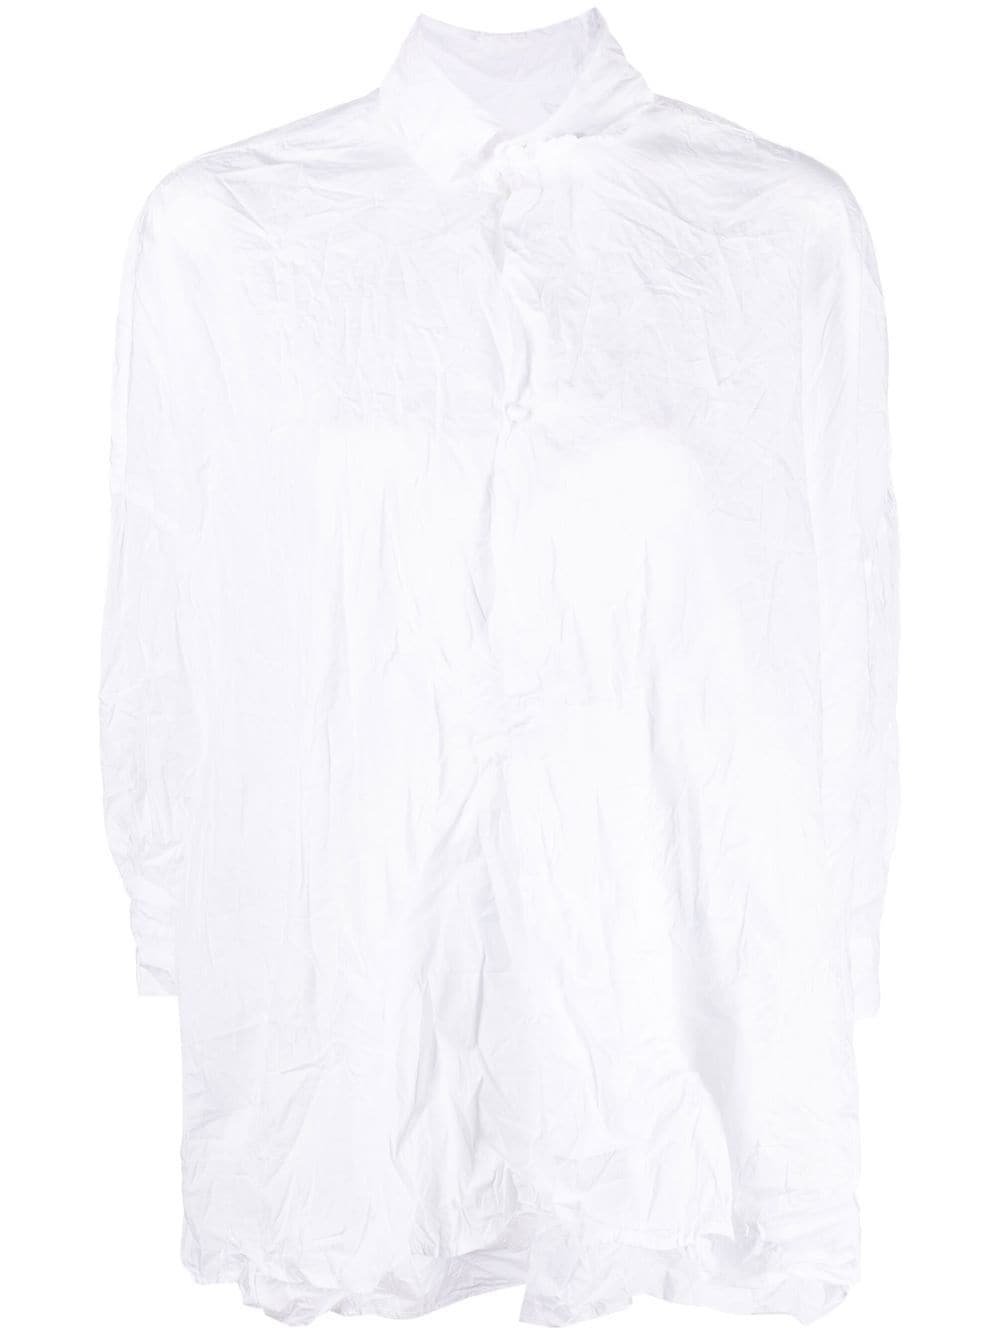 DANIELA GREGIS Double-Collar Crinkled Cotton Shirt for Women in White